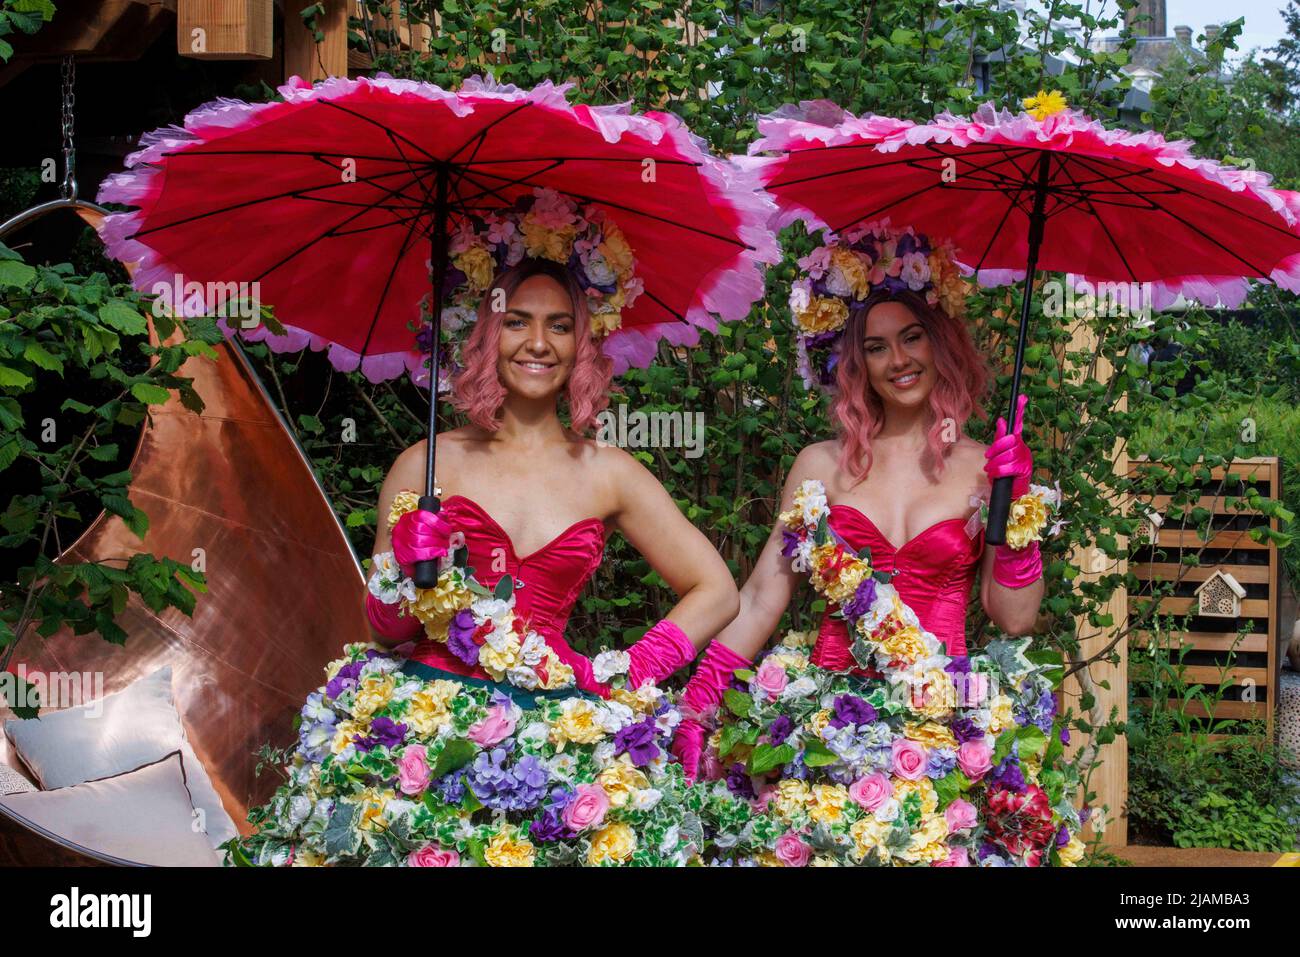 Dos modelos con vestidos de flores y guirnaldas y con coloridas sombrillas en el Salón de Flor Chelsea de RHS. Foto de stock